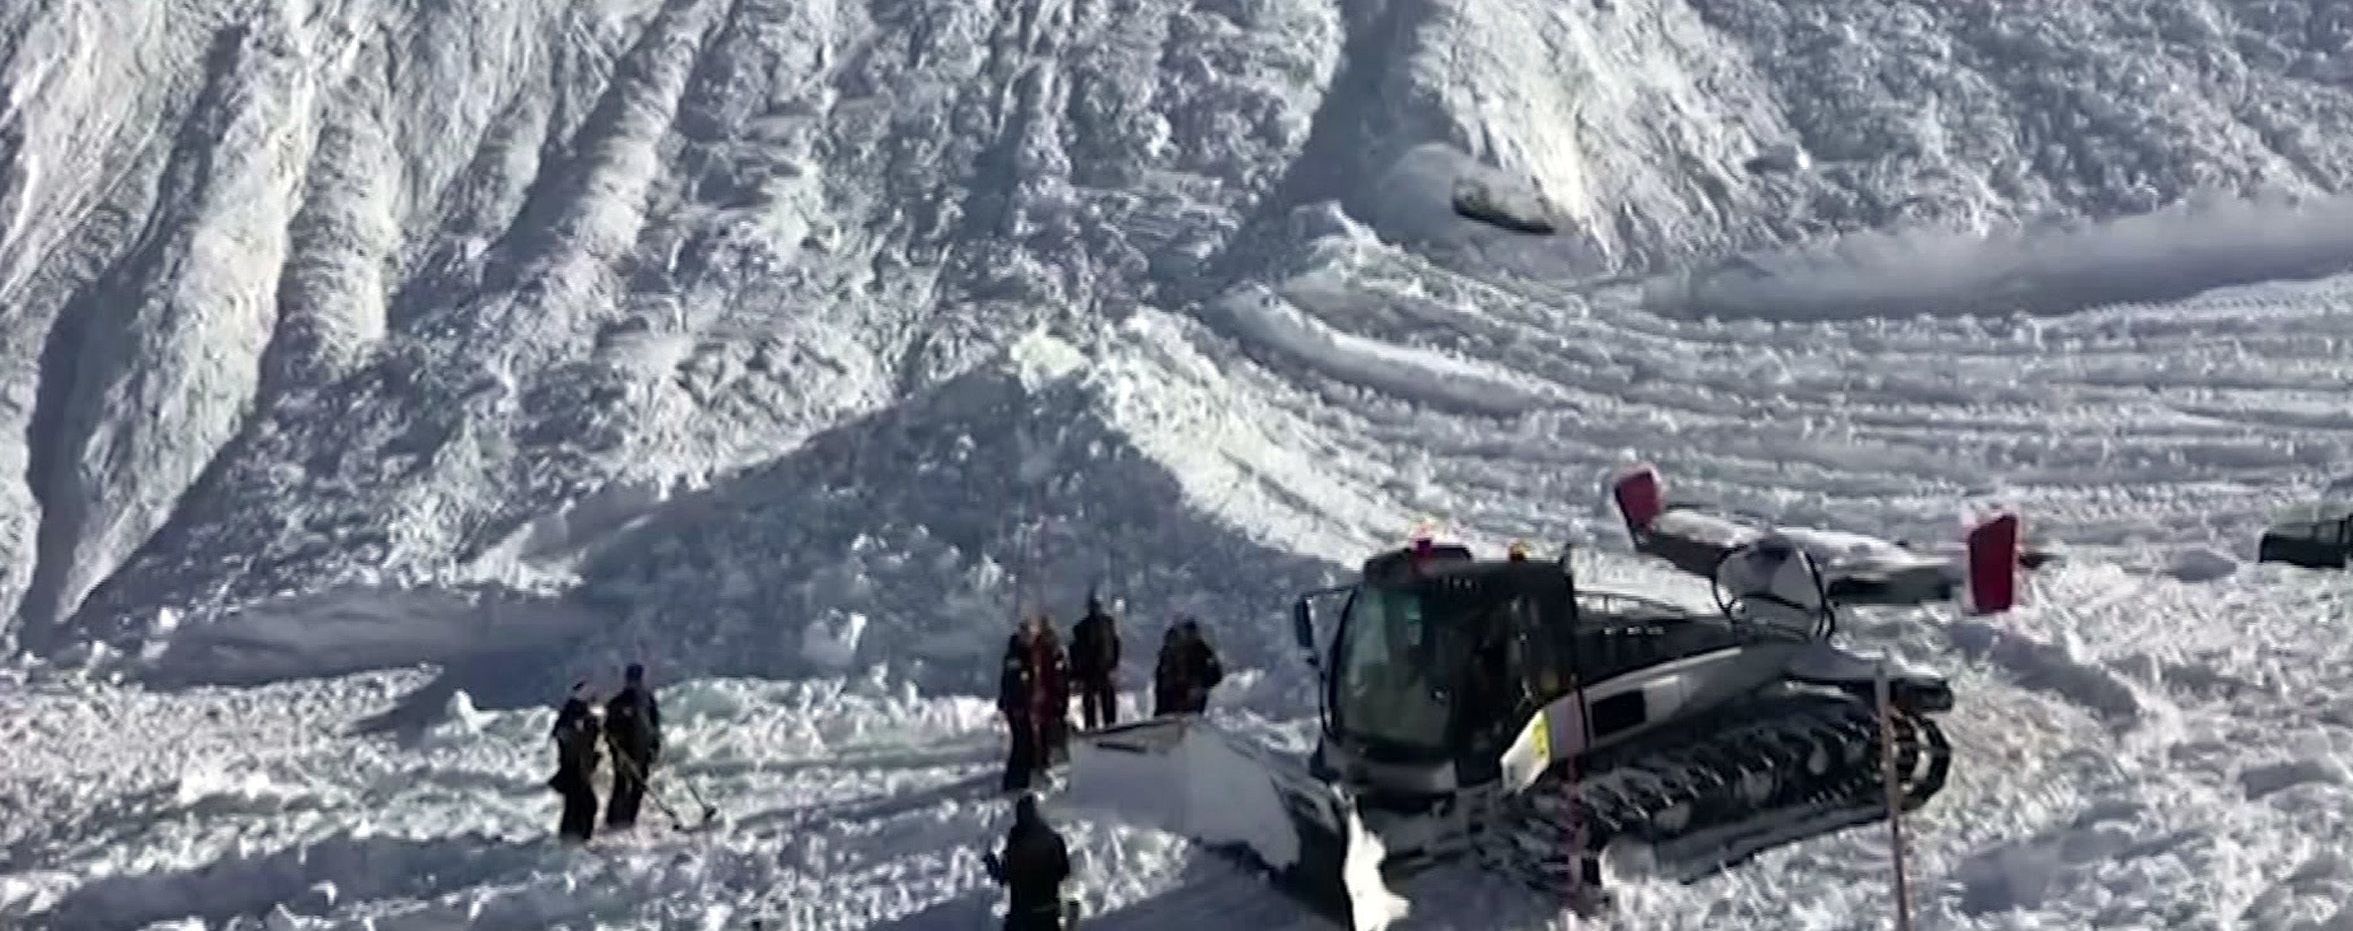 Спасатели предупредили про опасные лавины в Карпатах